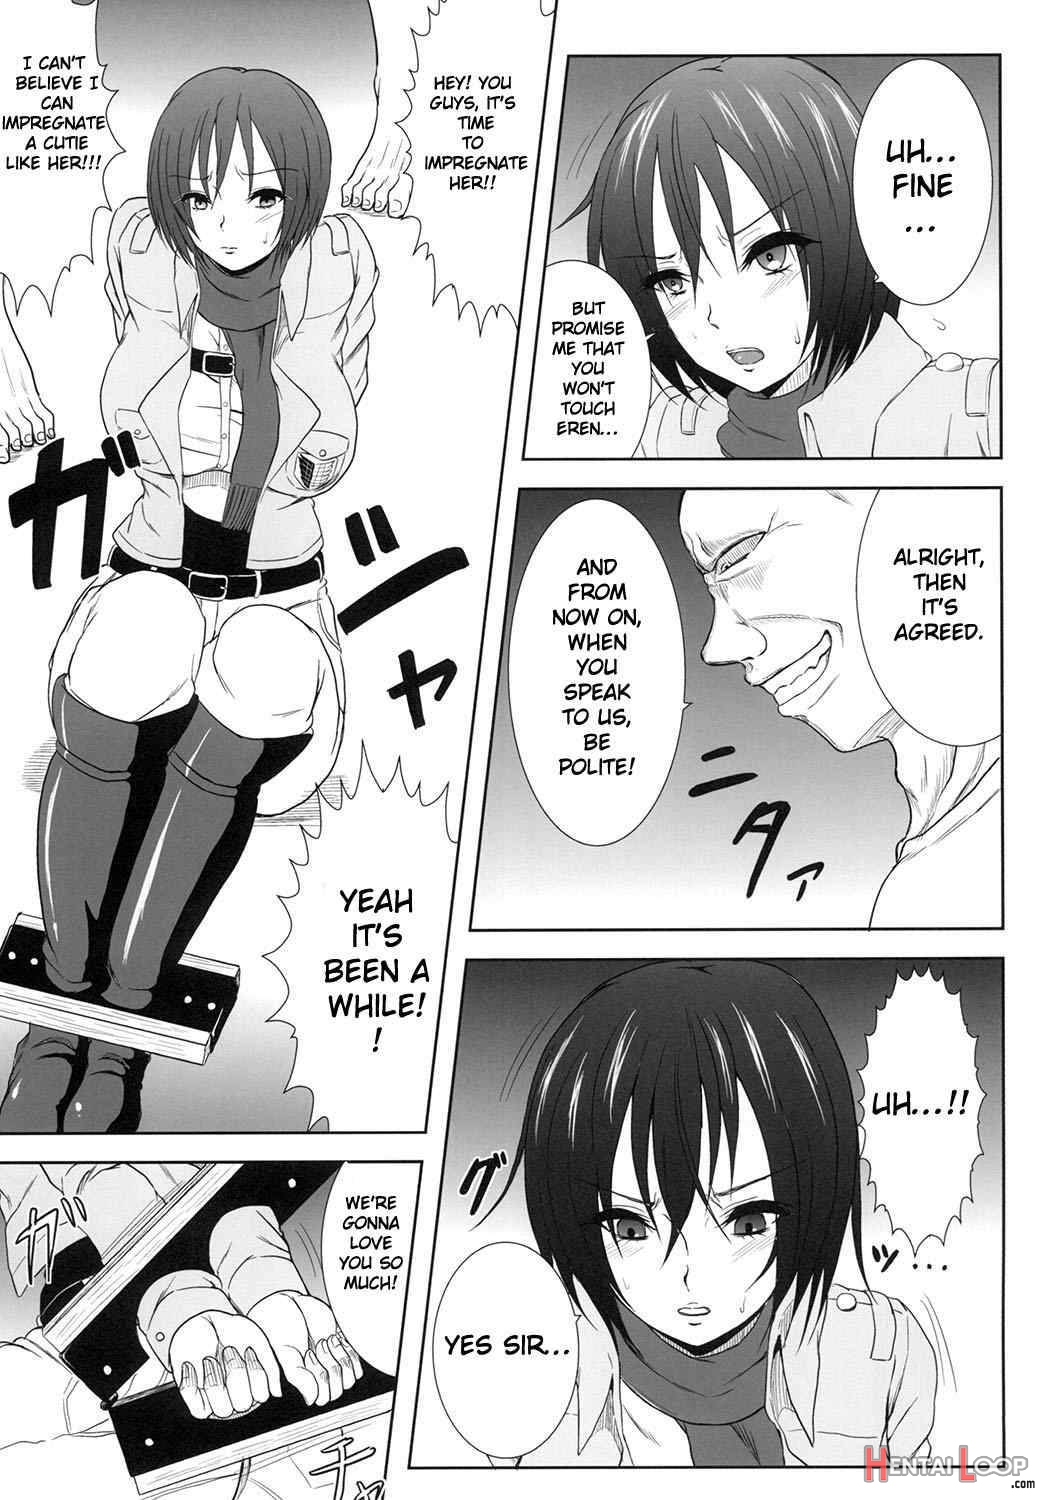 Mikasa Kanraku page 9